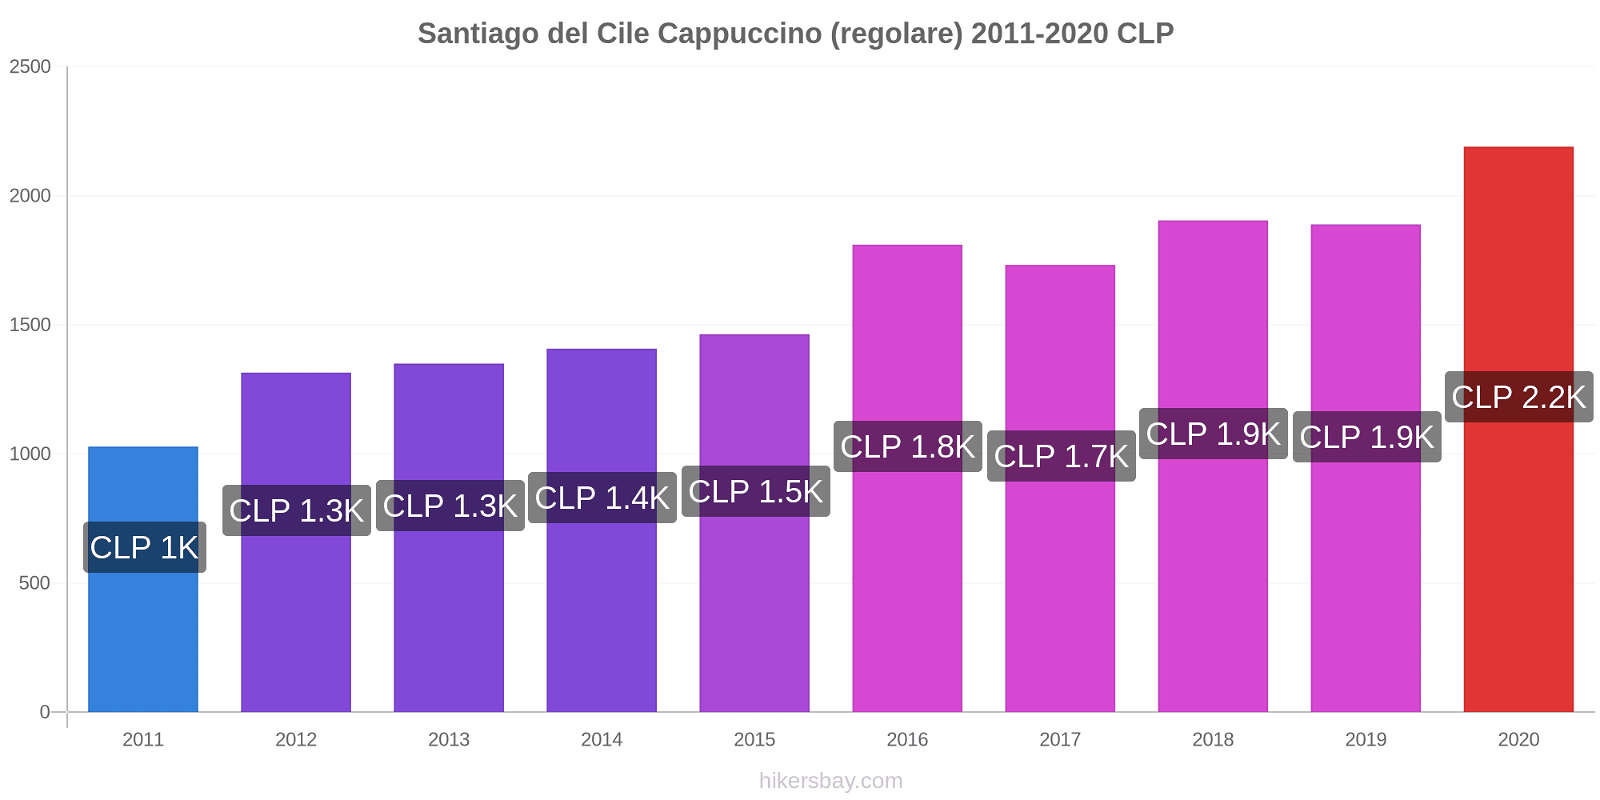 Santiago del Cile variazioni di prezzo Cappuccino (normale) hikersbay.com